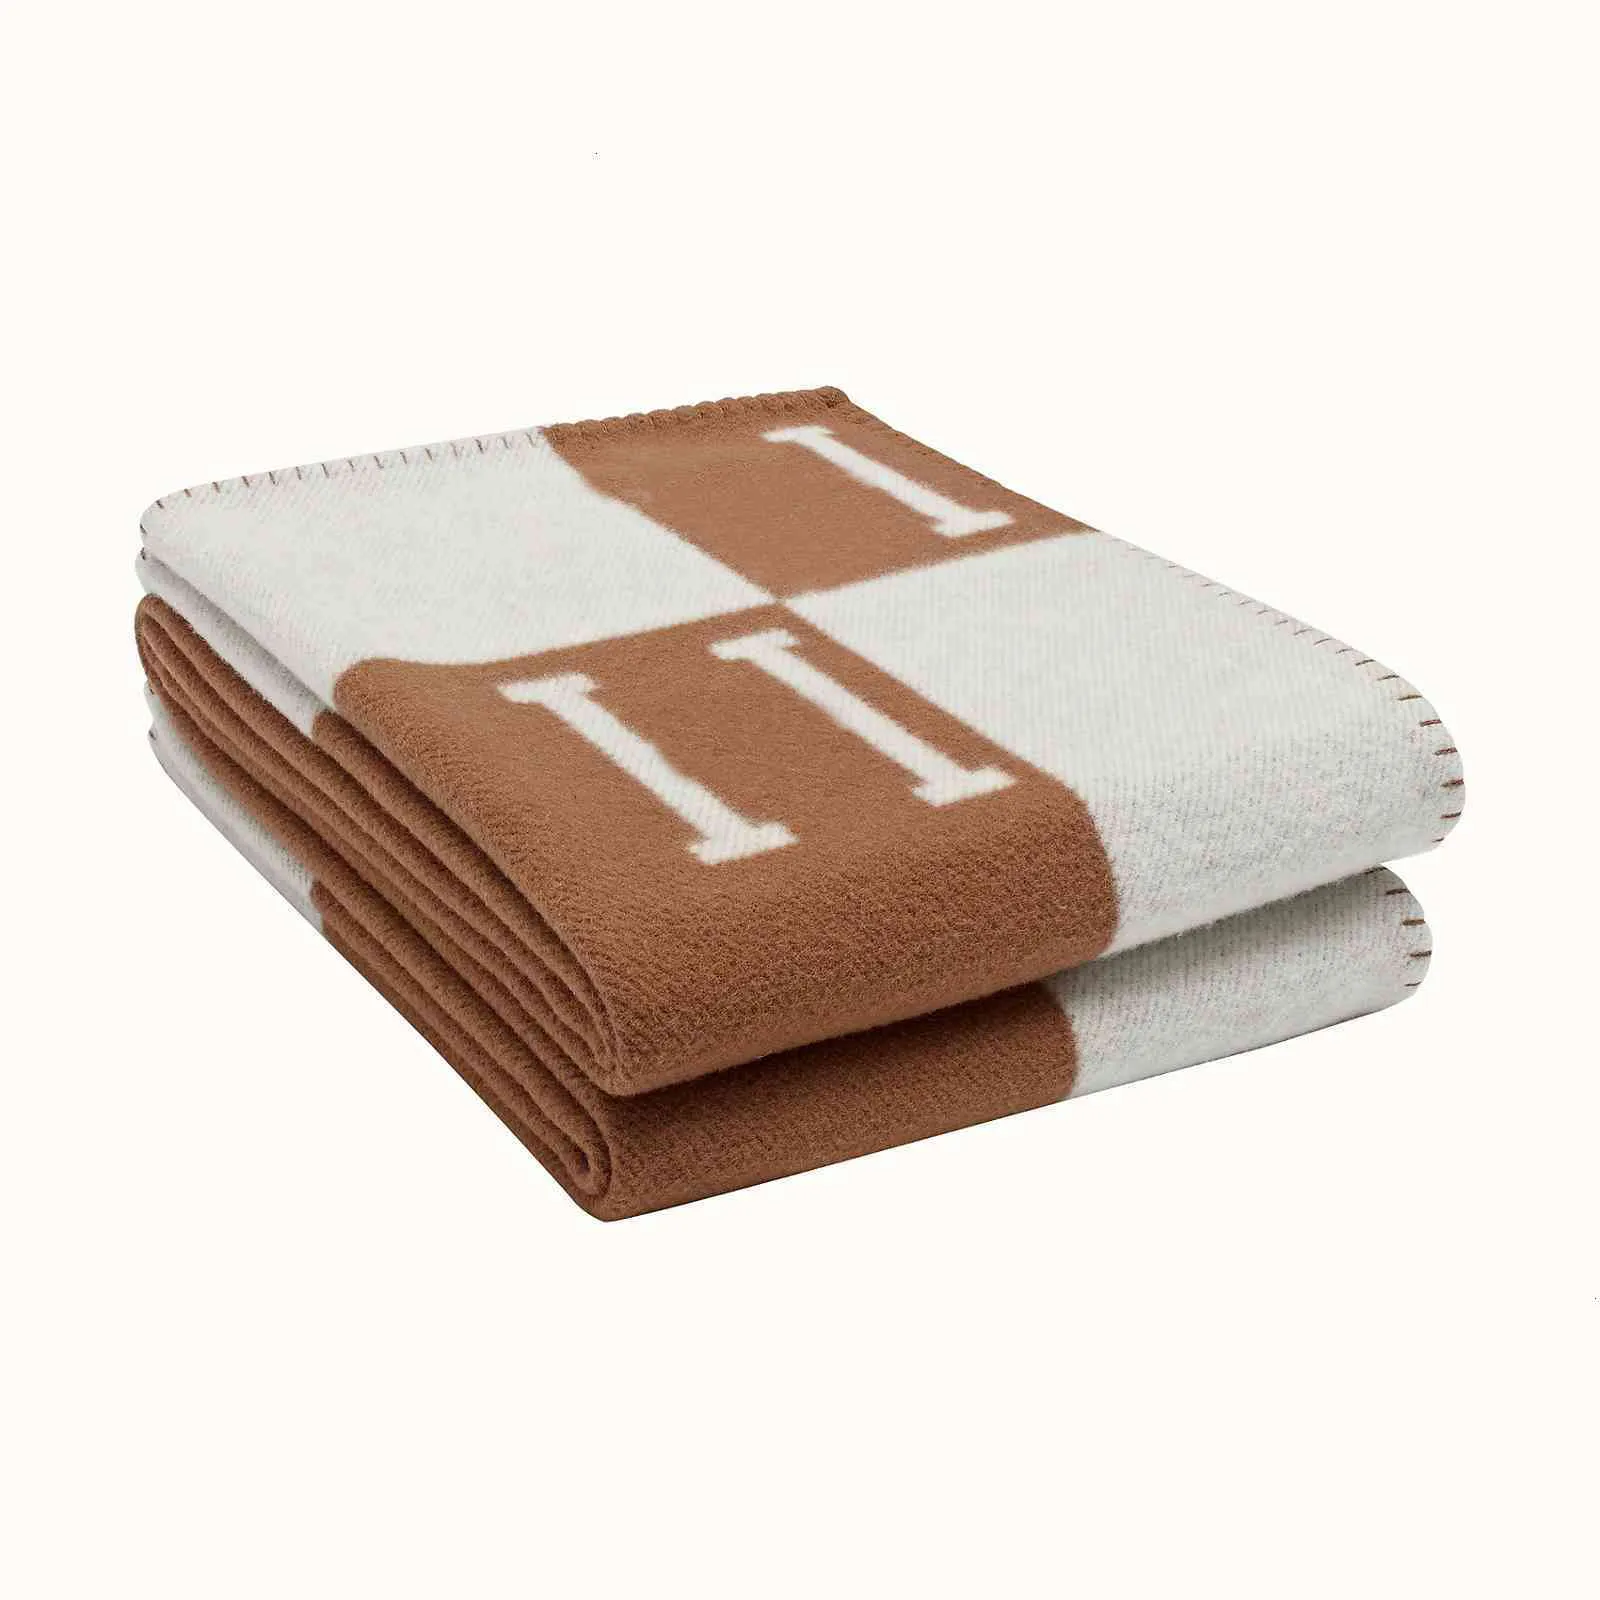 2021 кашемировое дизайнерское одеяло с буквенным принтом, мягкий шерстяной шарф, шаль, портативный утепленный плед, диван-кровать, флисовое вязаное одеяло 135-170 см, лучшее качество